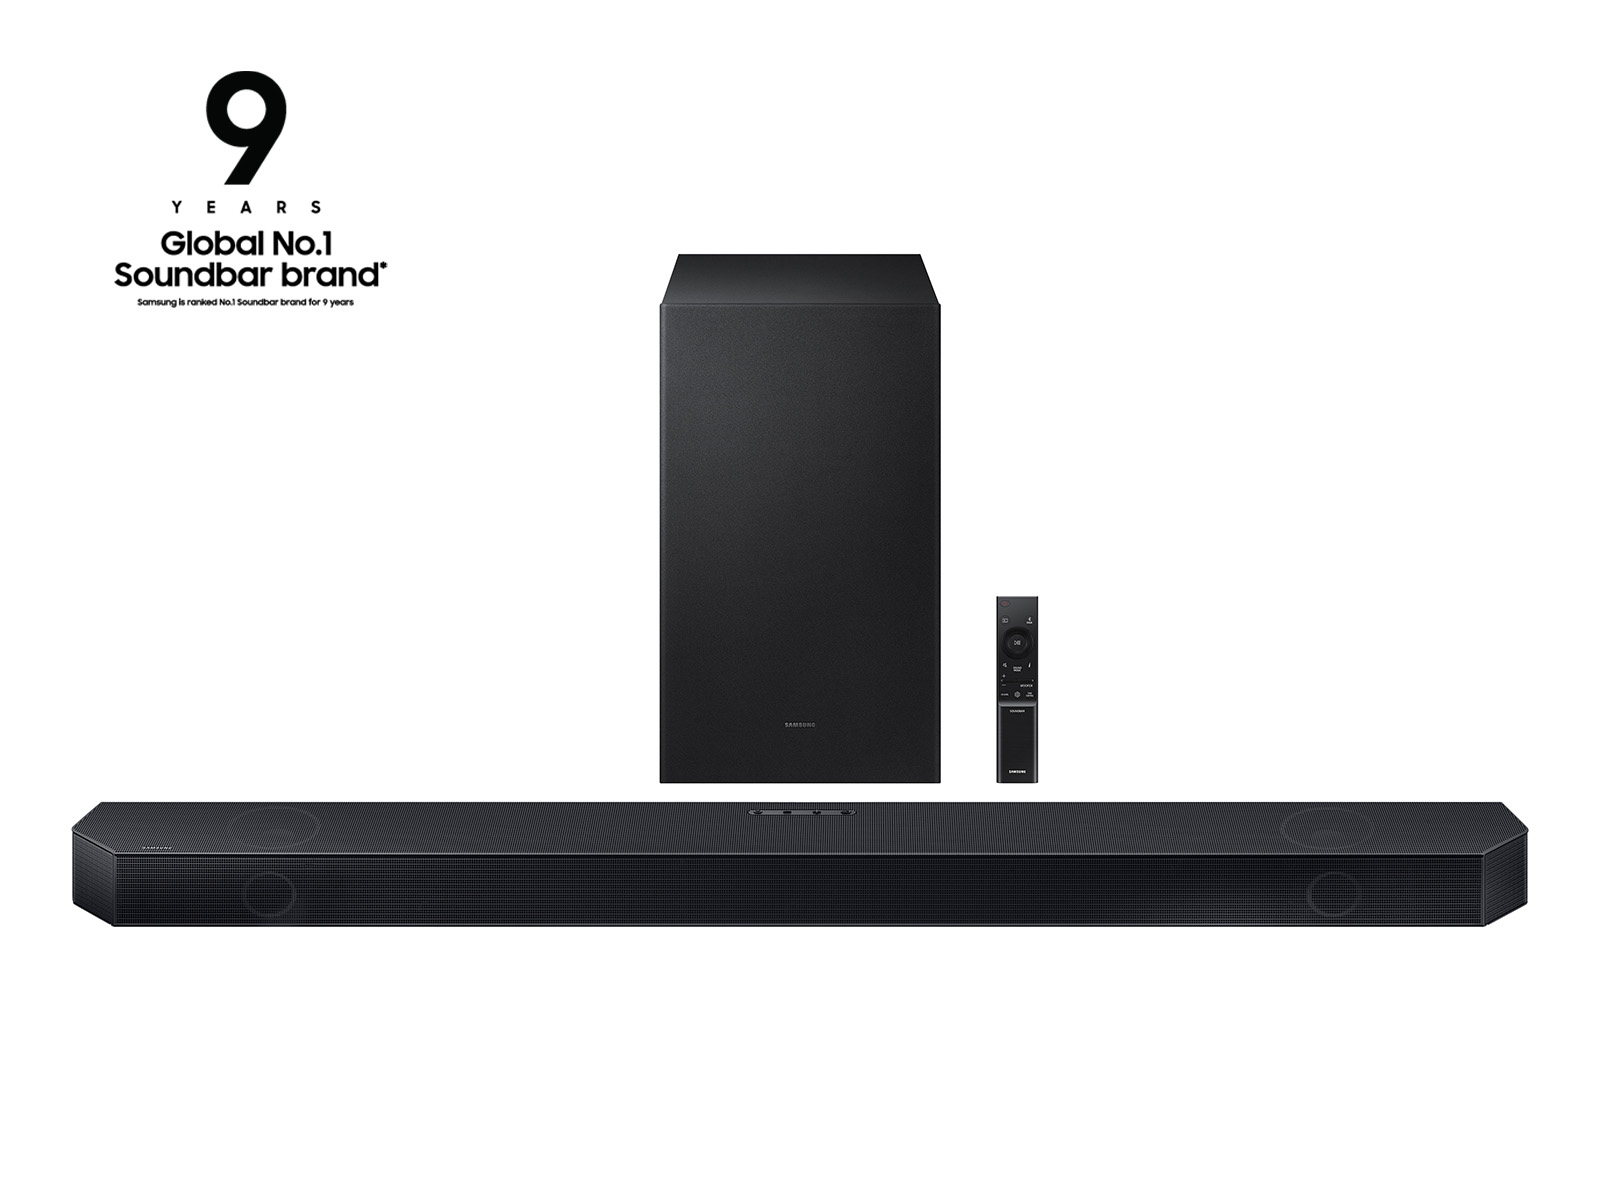 LG QNED Mini-LED, Dolby Atmos soundbars at CES 2022